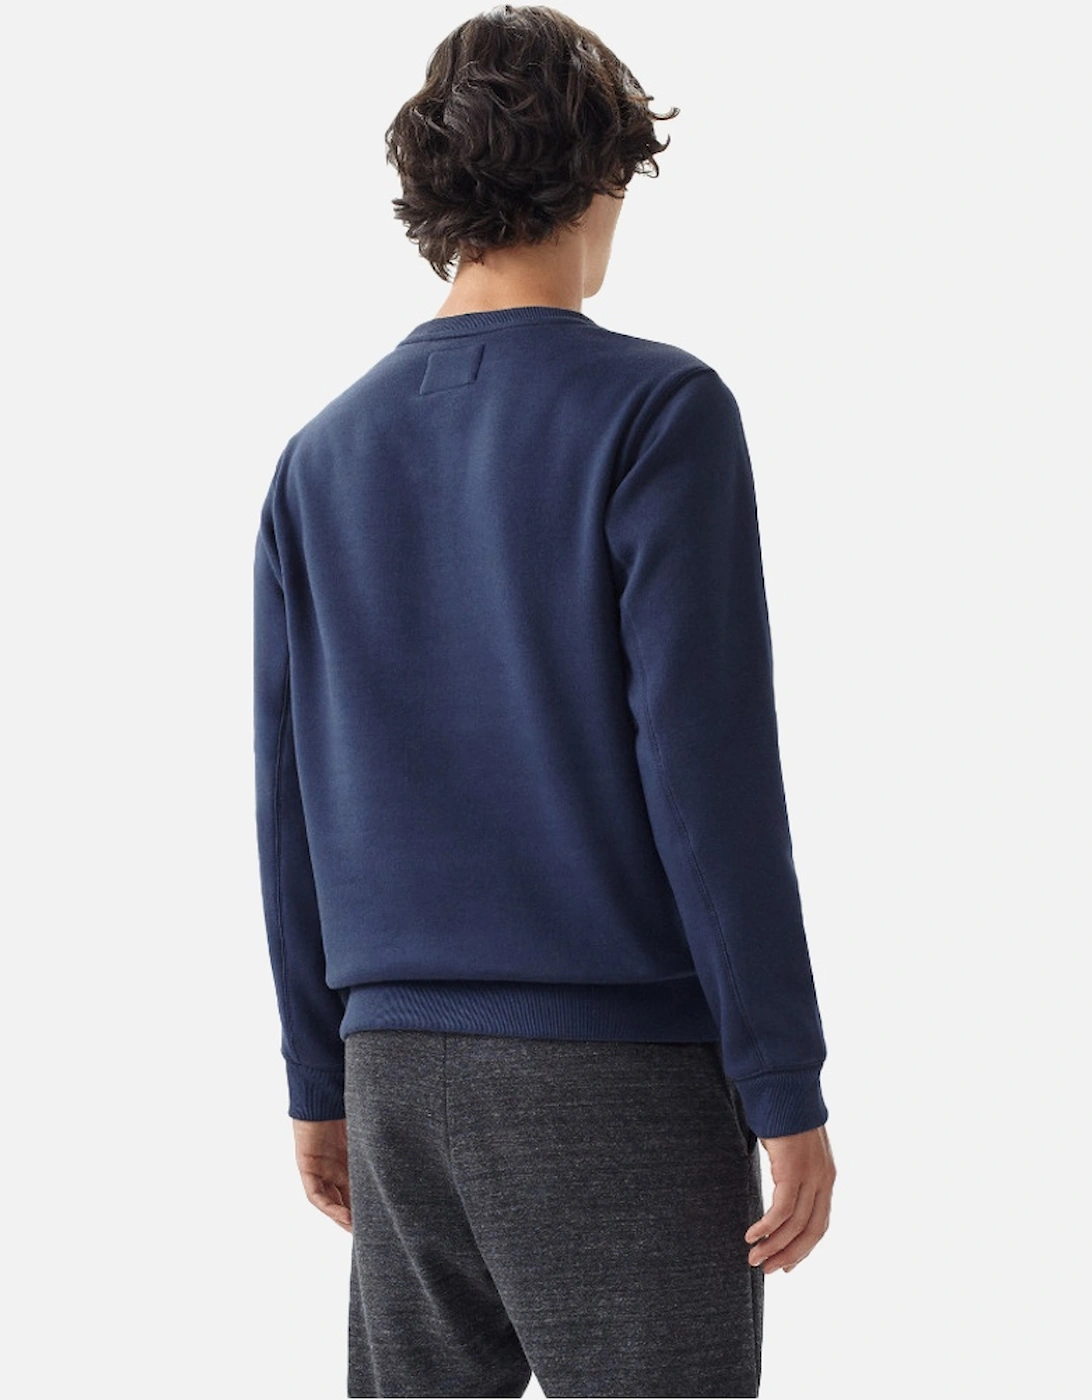 Mens O' Slim Fit Warm Graphic Sweatershirt Jumper